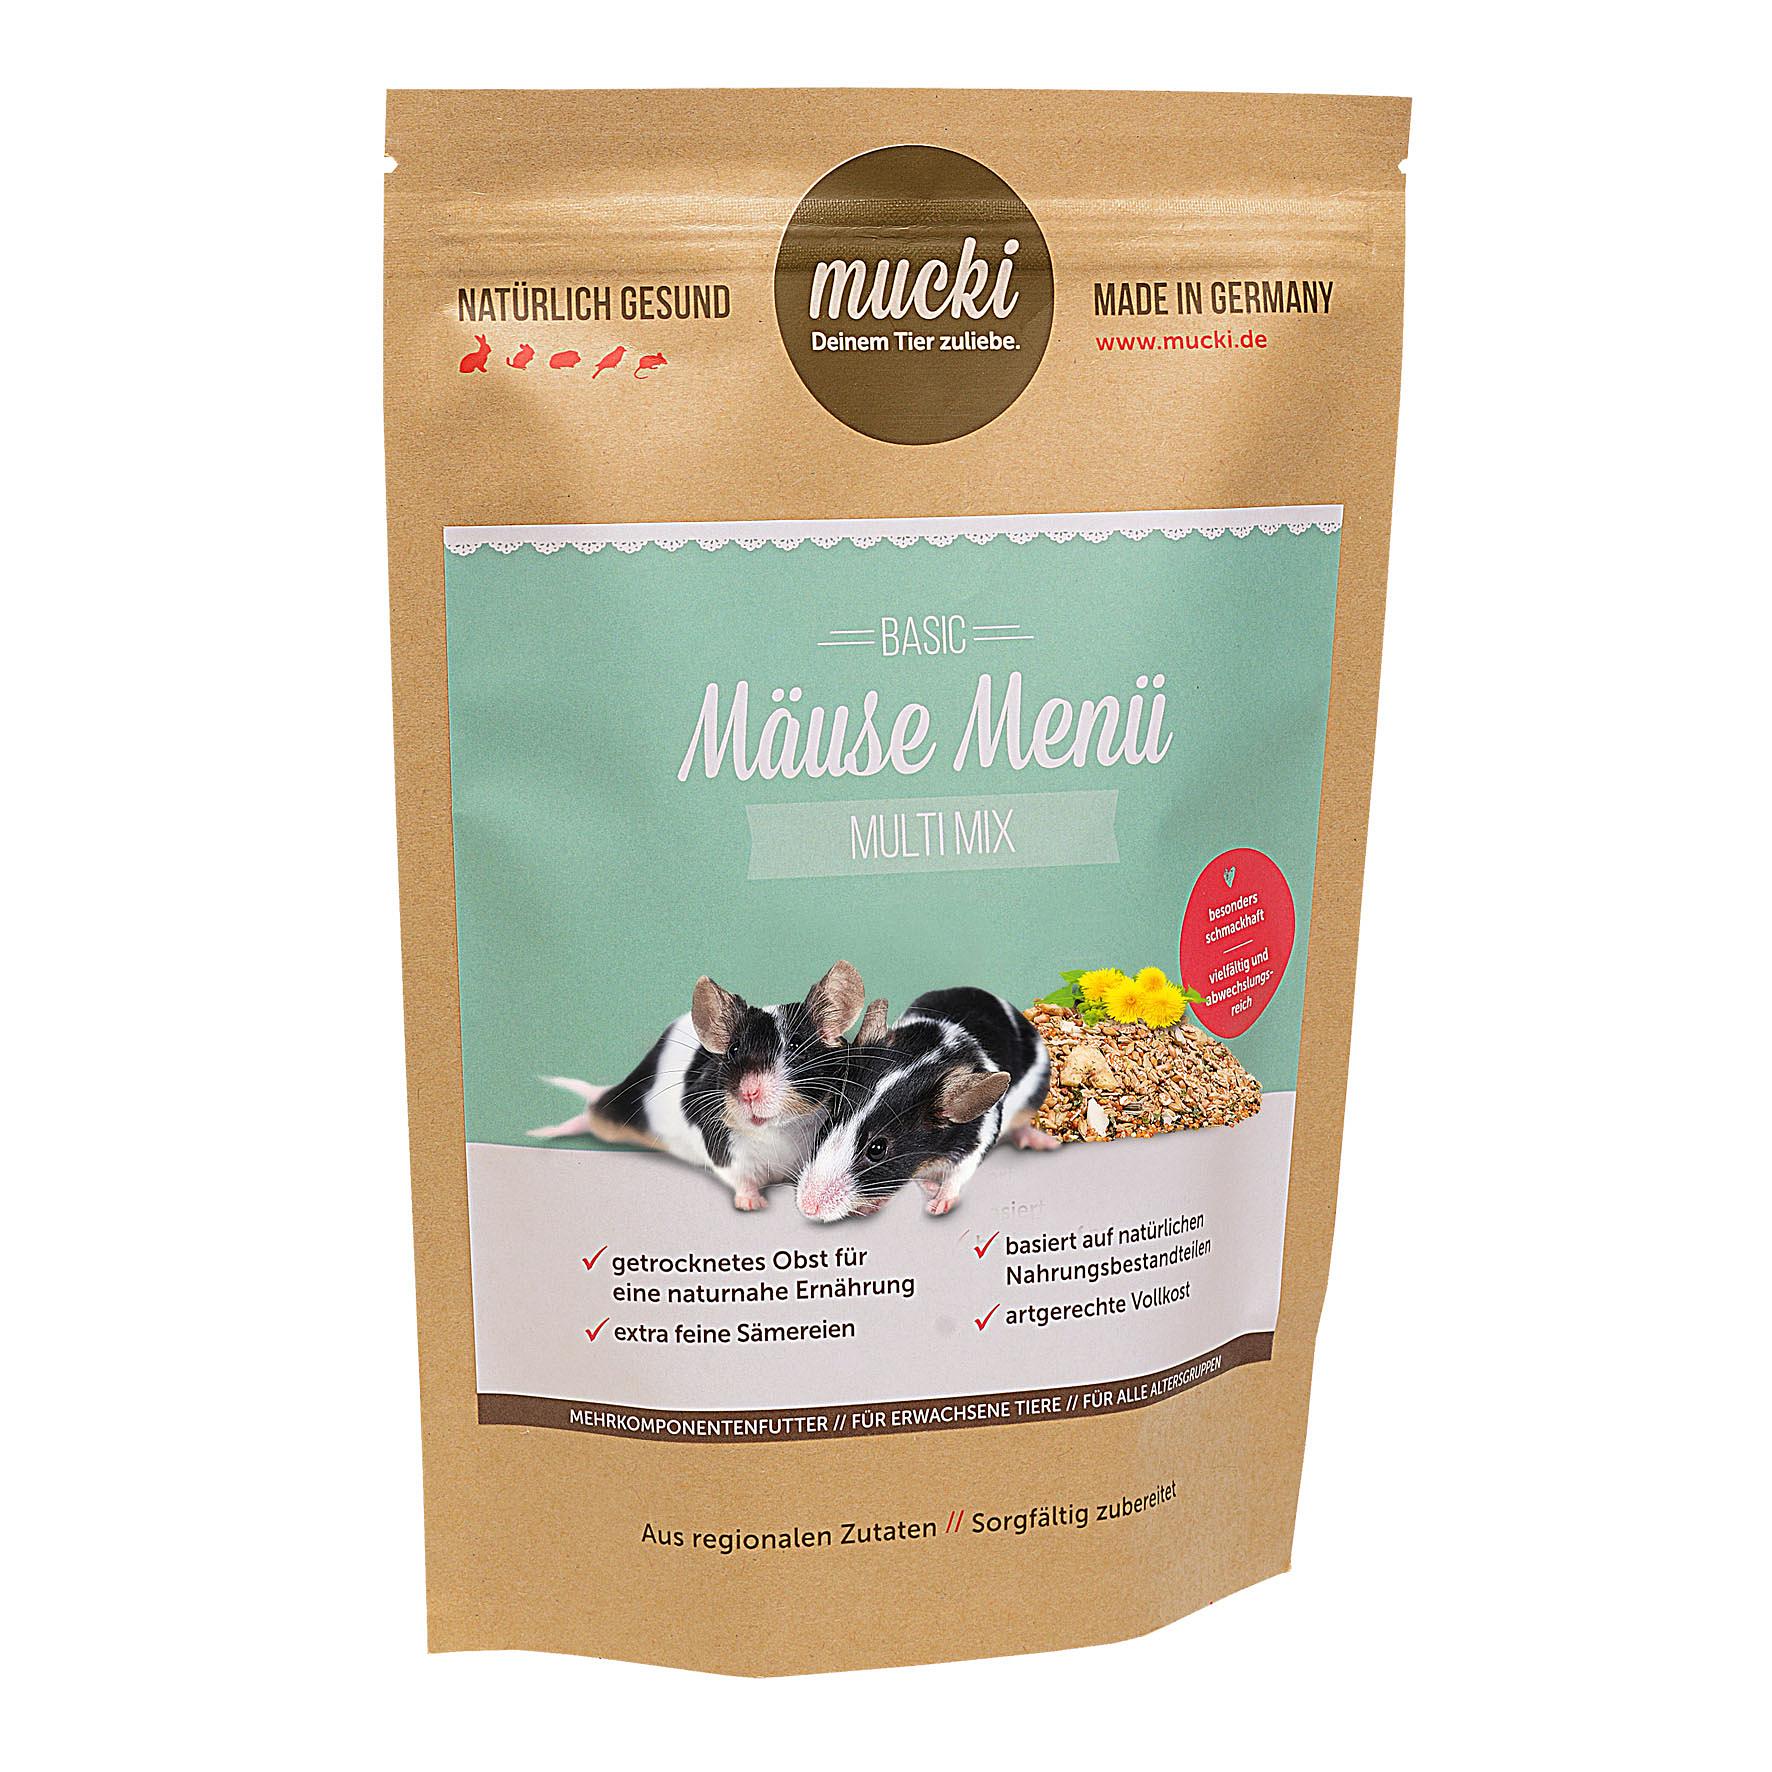 Mucki Menu pour souris Multi Mix